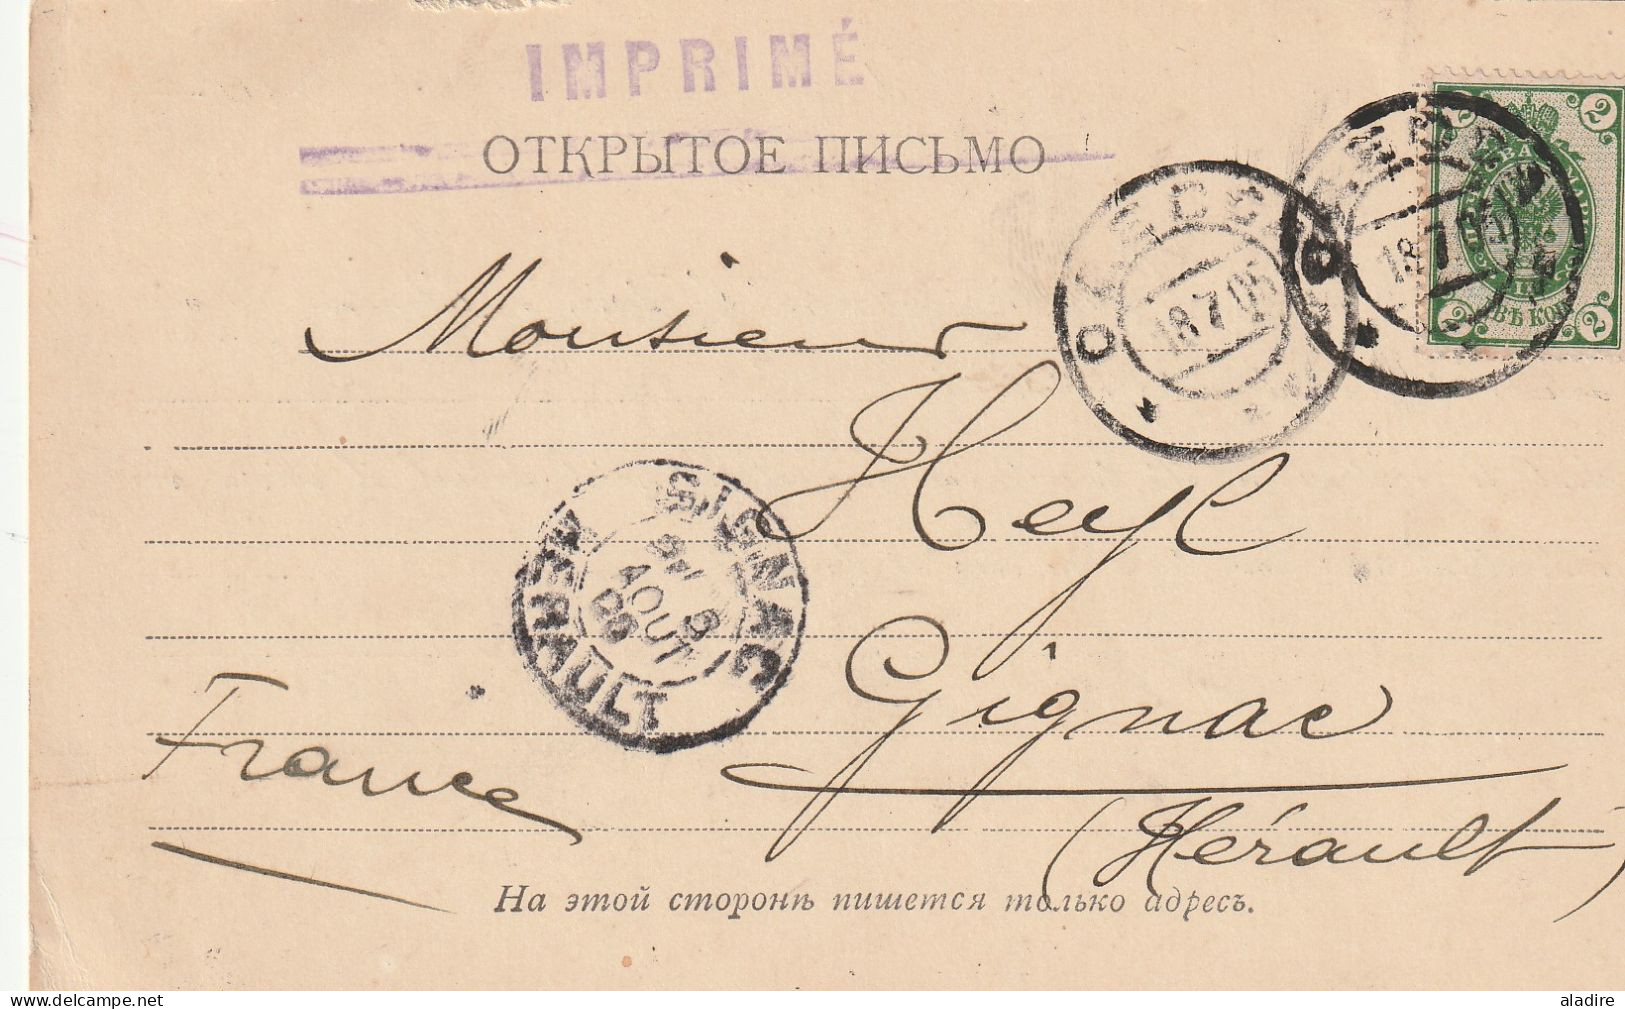 1811 - 1991 Україна UKRAINE - lot de 7 lettres, enveloppes et entiers  - 14 scans